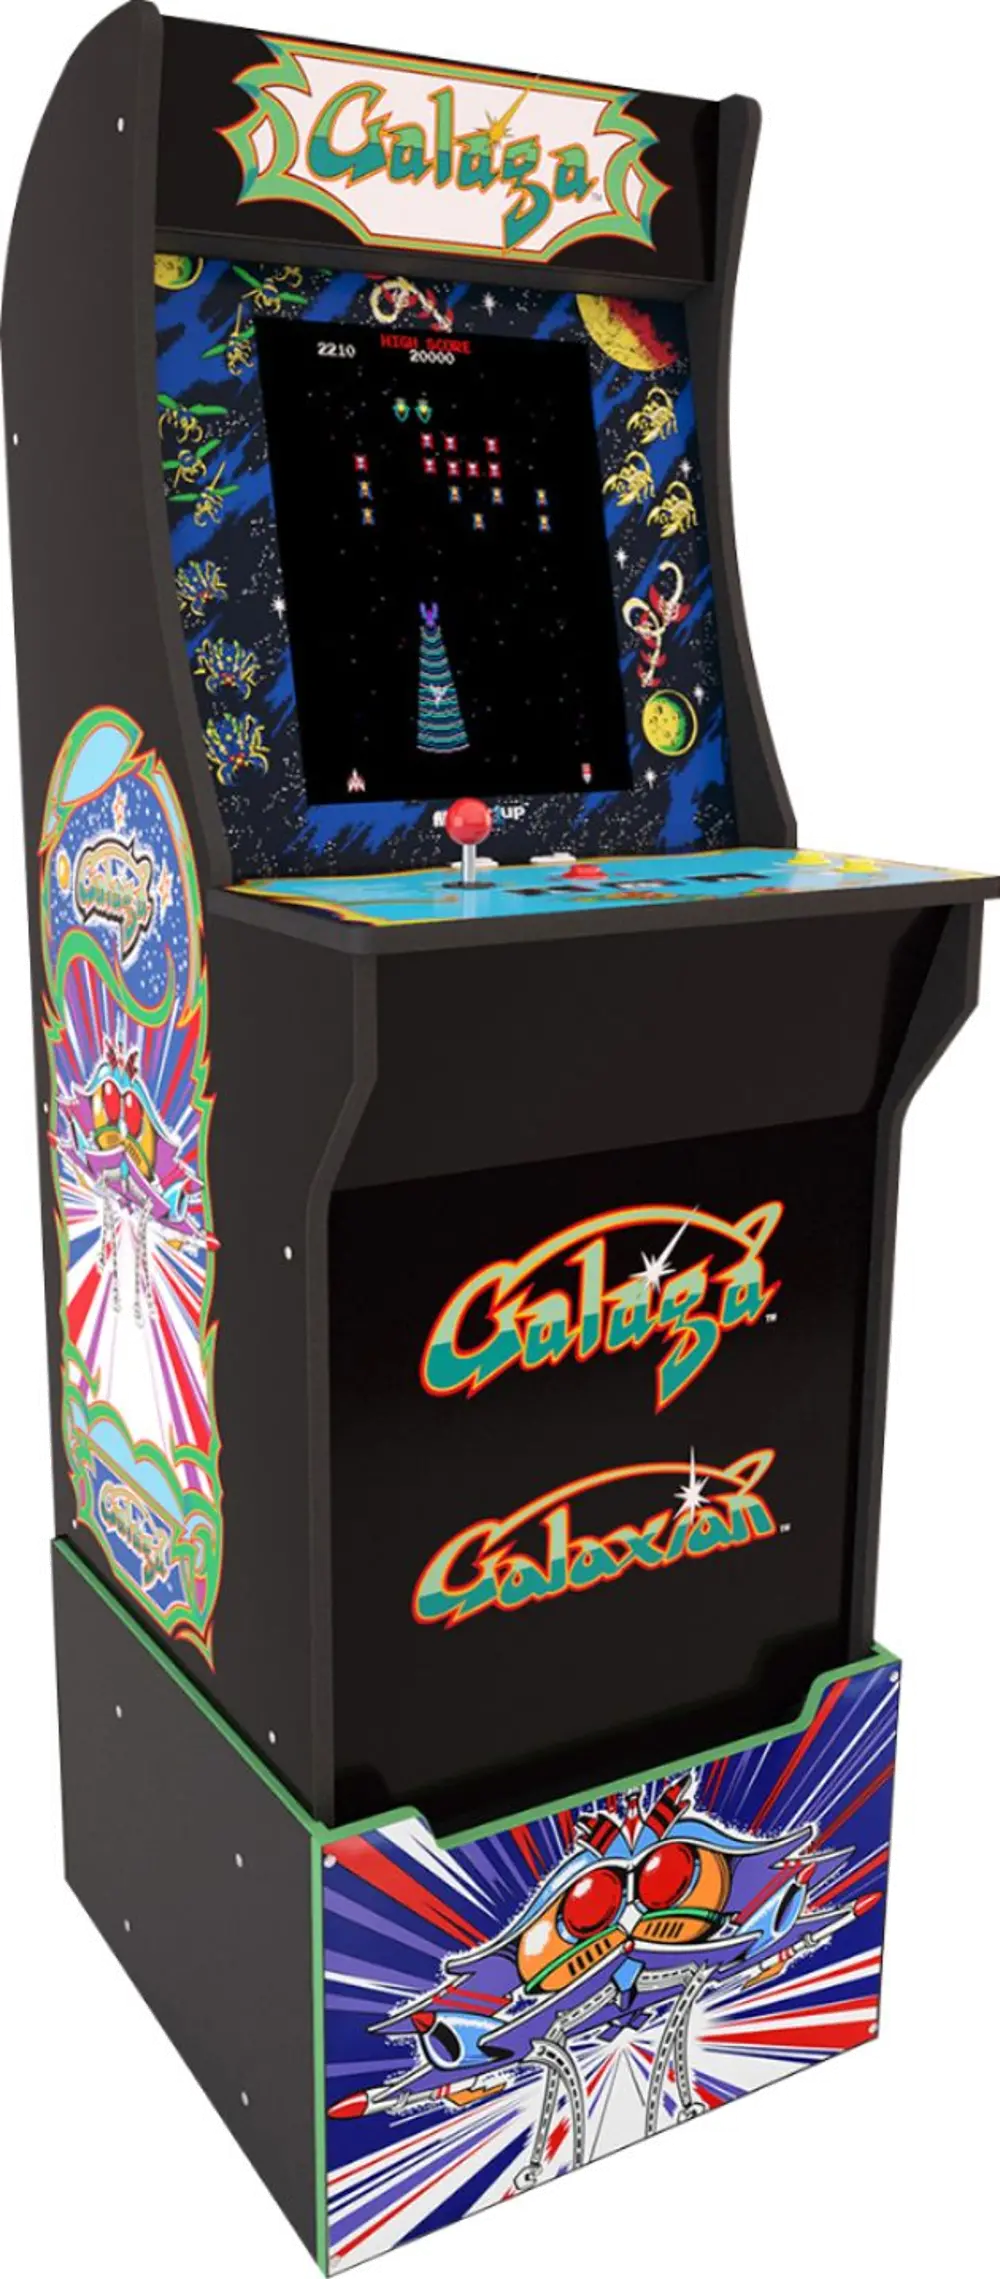 ARCADE1UP/GALAGA Arcade 1UP Galaga Arcade with Riser-1